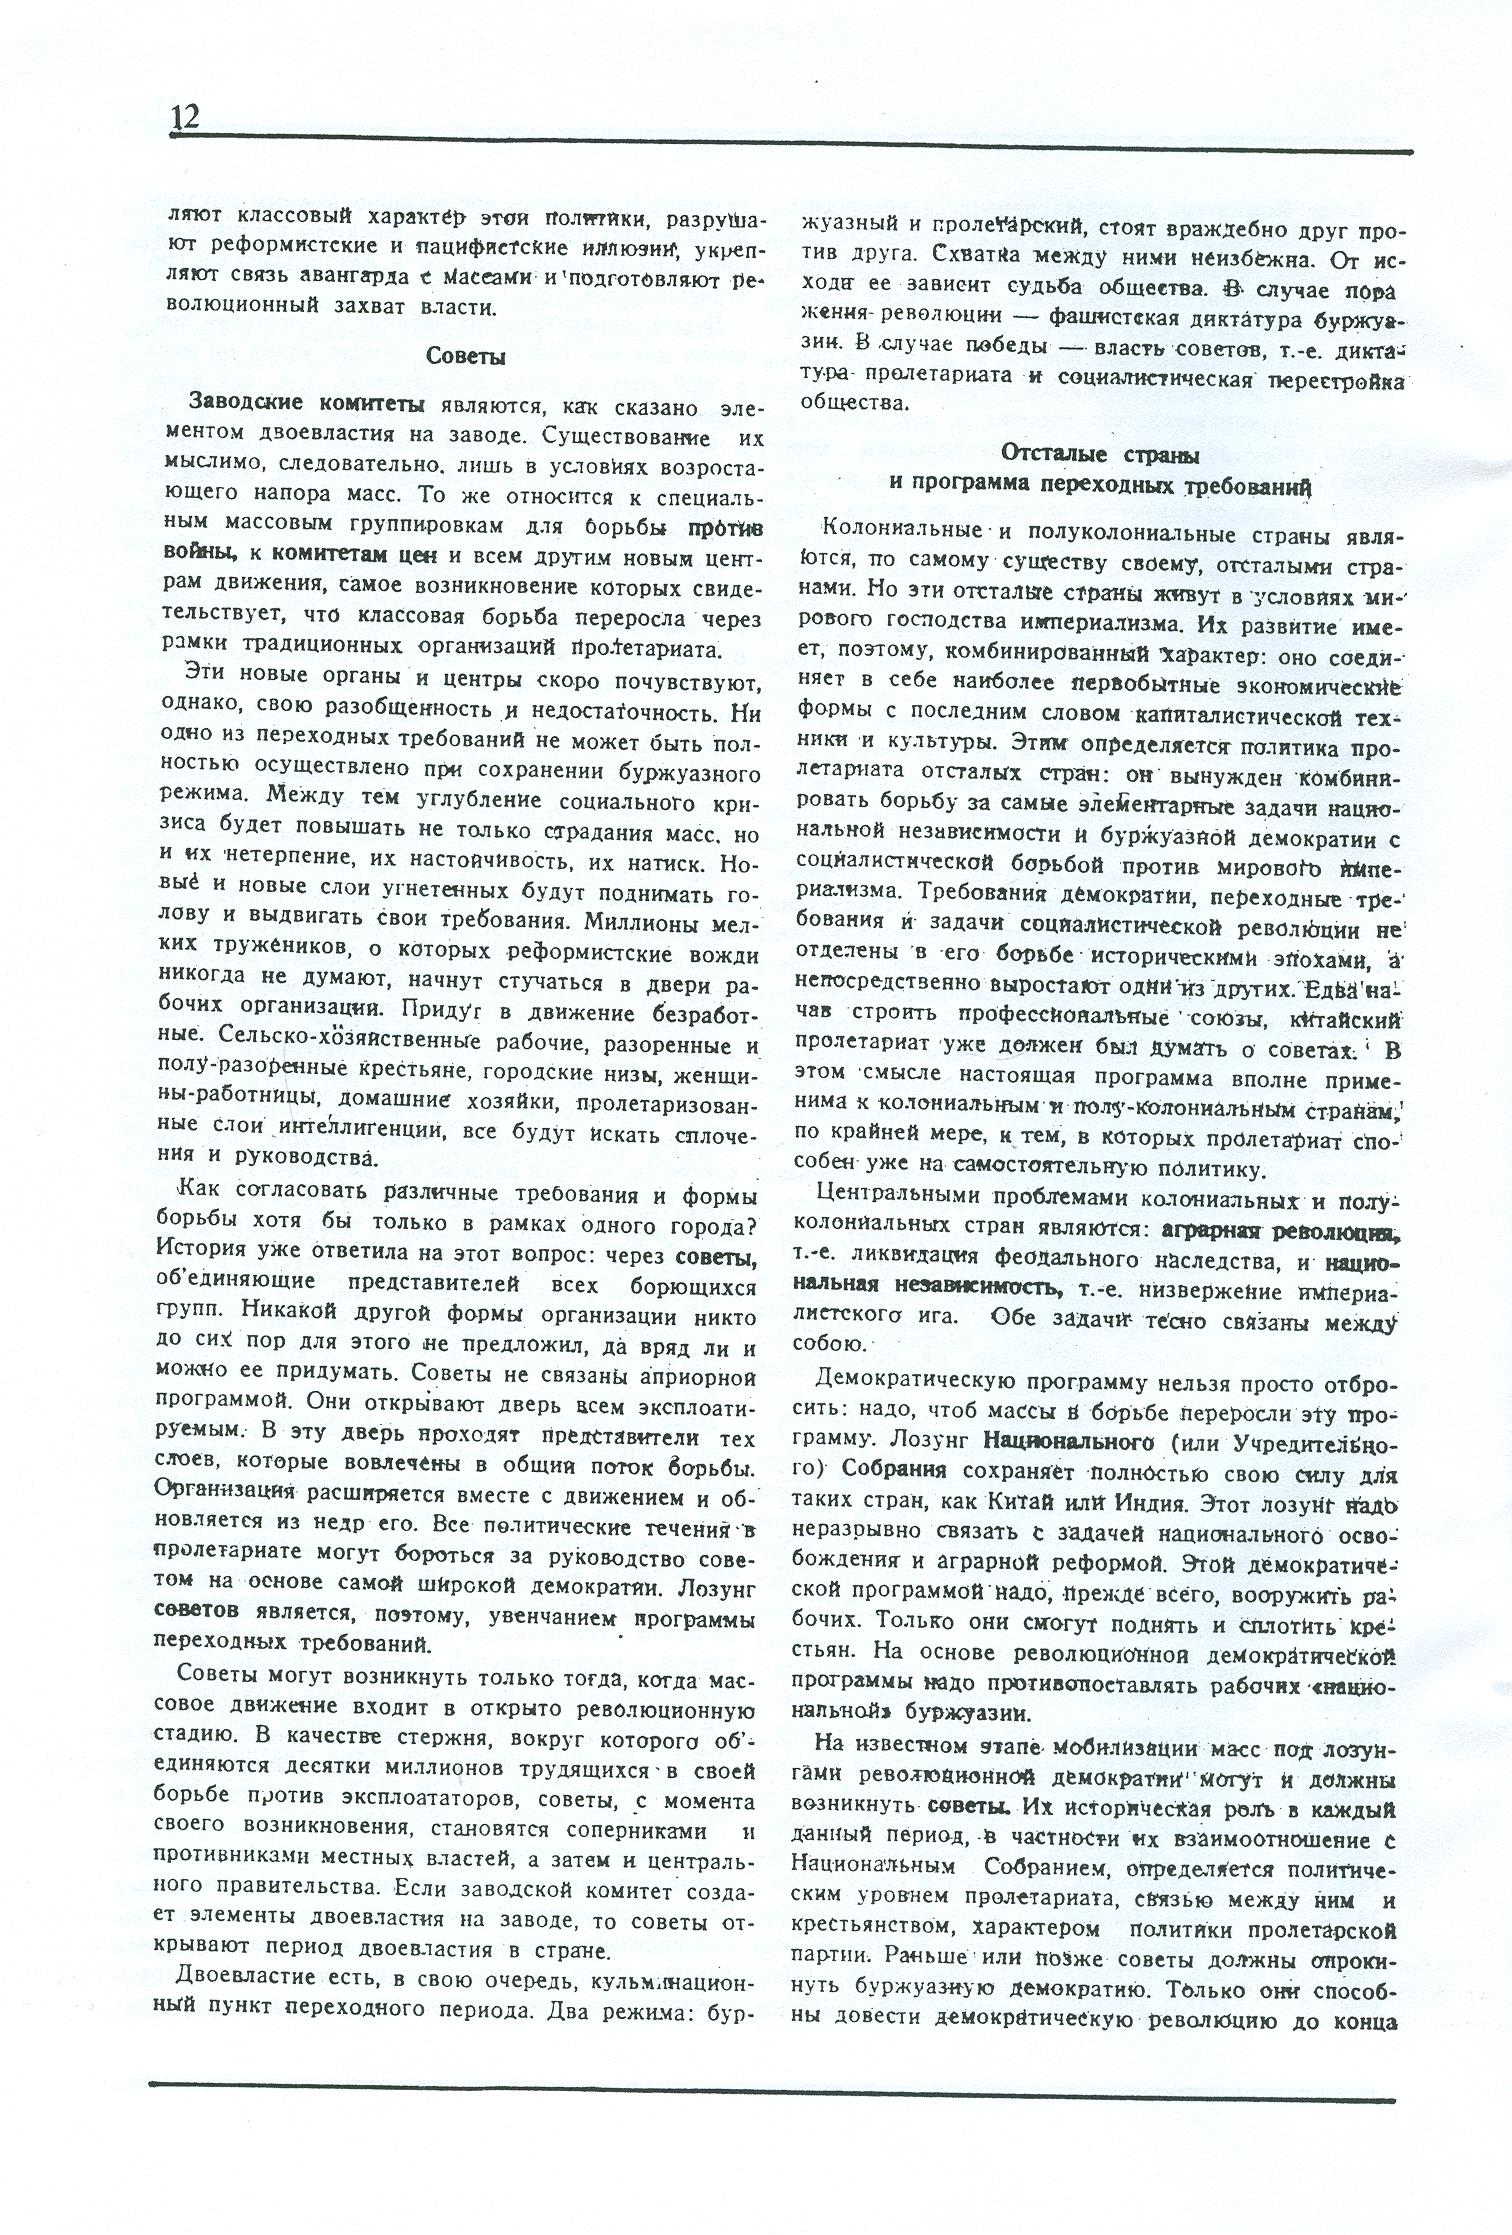 Dagli archivi del bolscevismo n. 1 (marzo 1986) - pag. 12